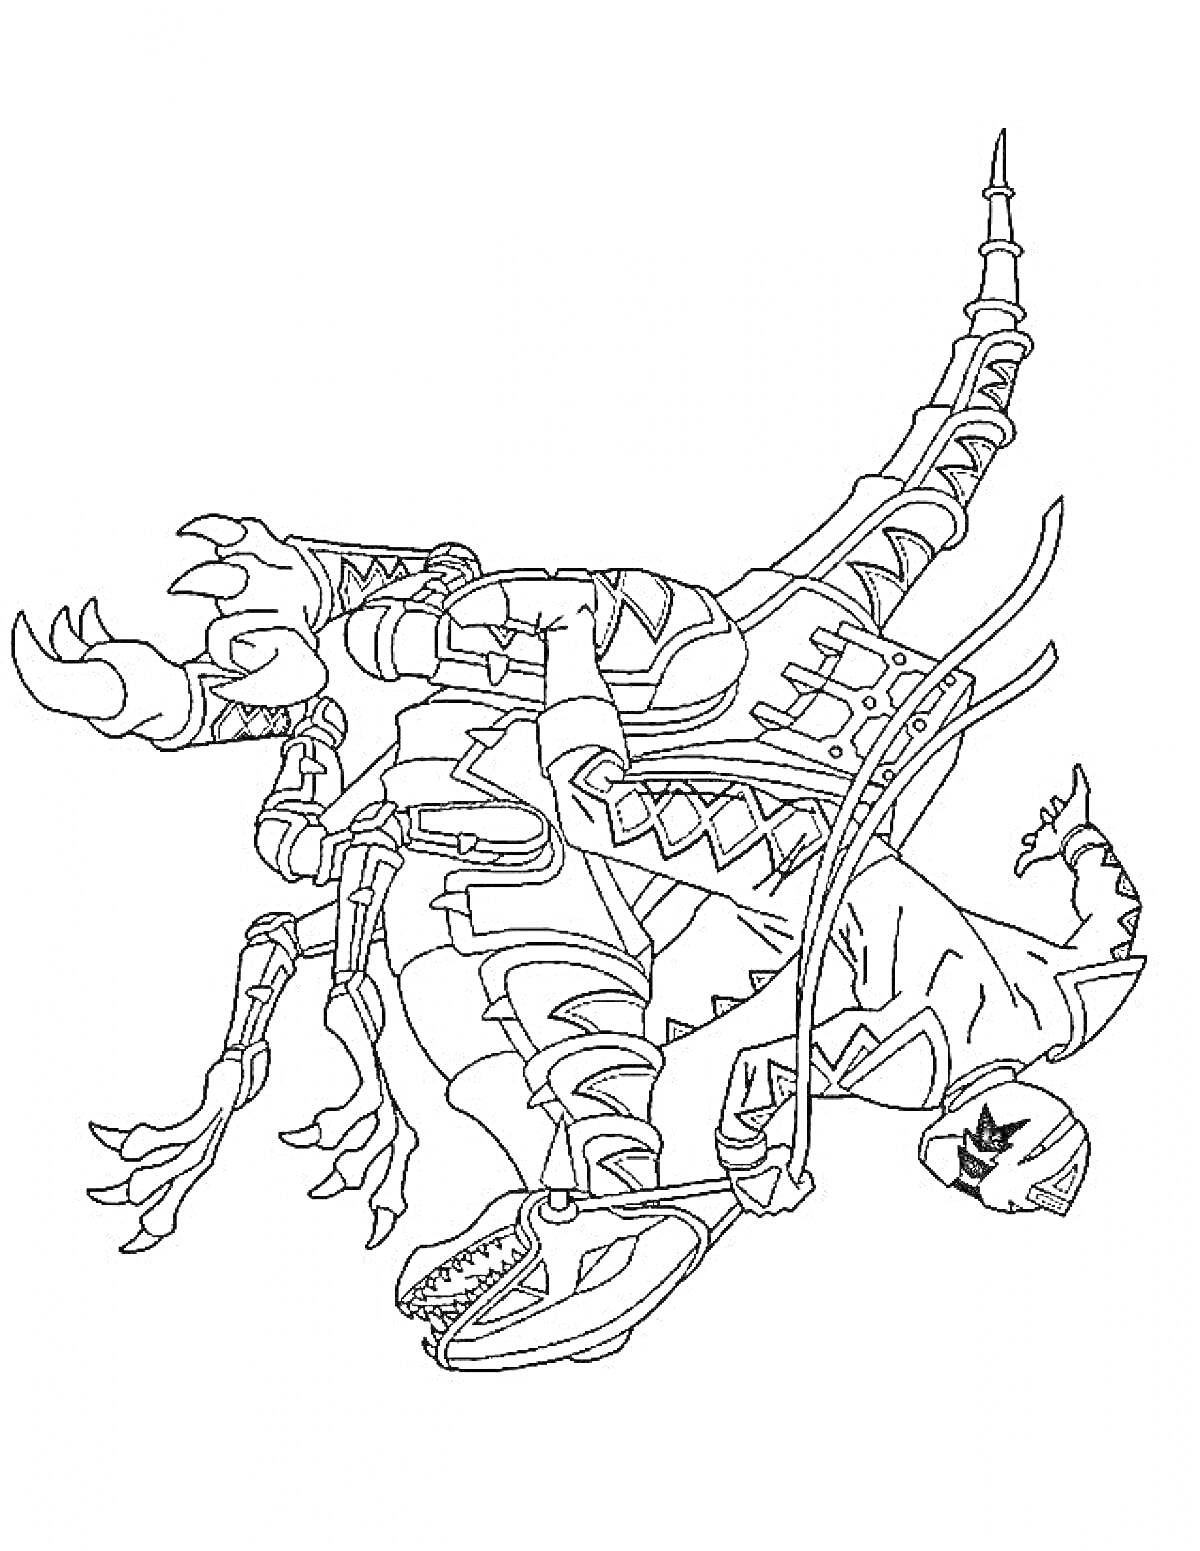 Раскраска Скричер в форме динозавра с механическими элементами и высоко поднятой передней лапой